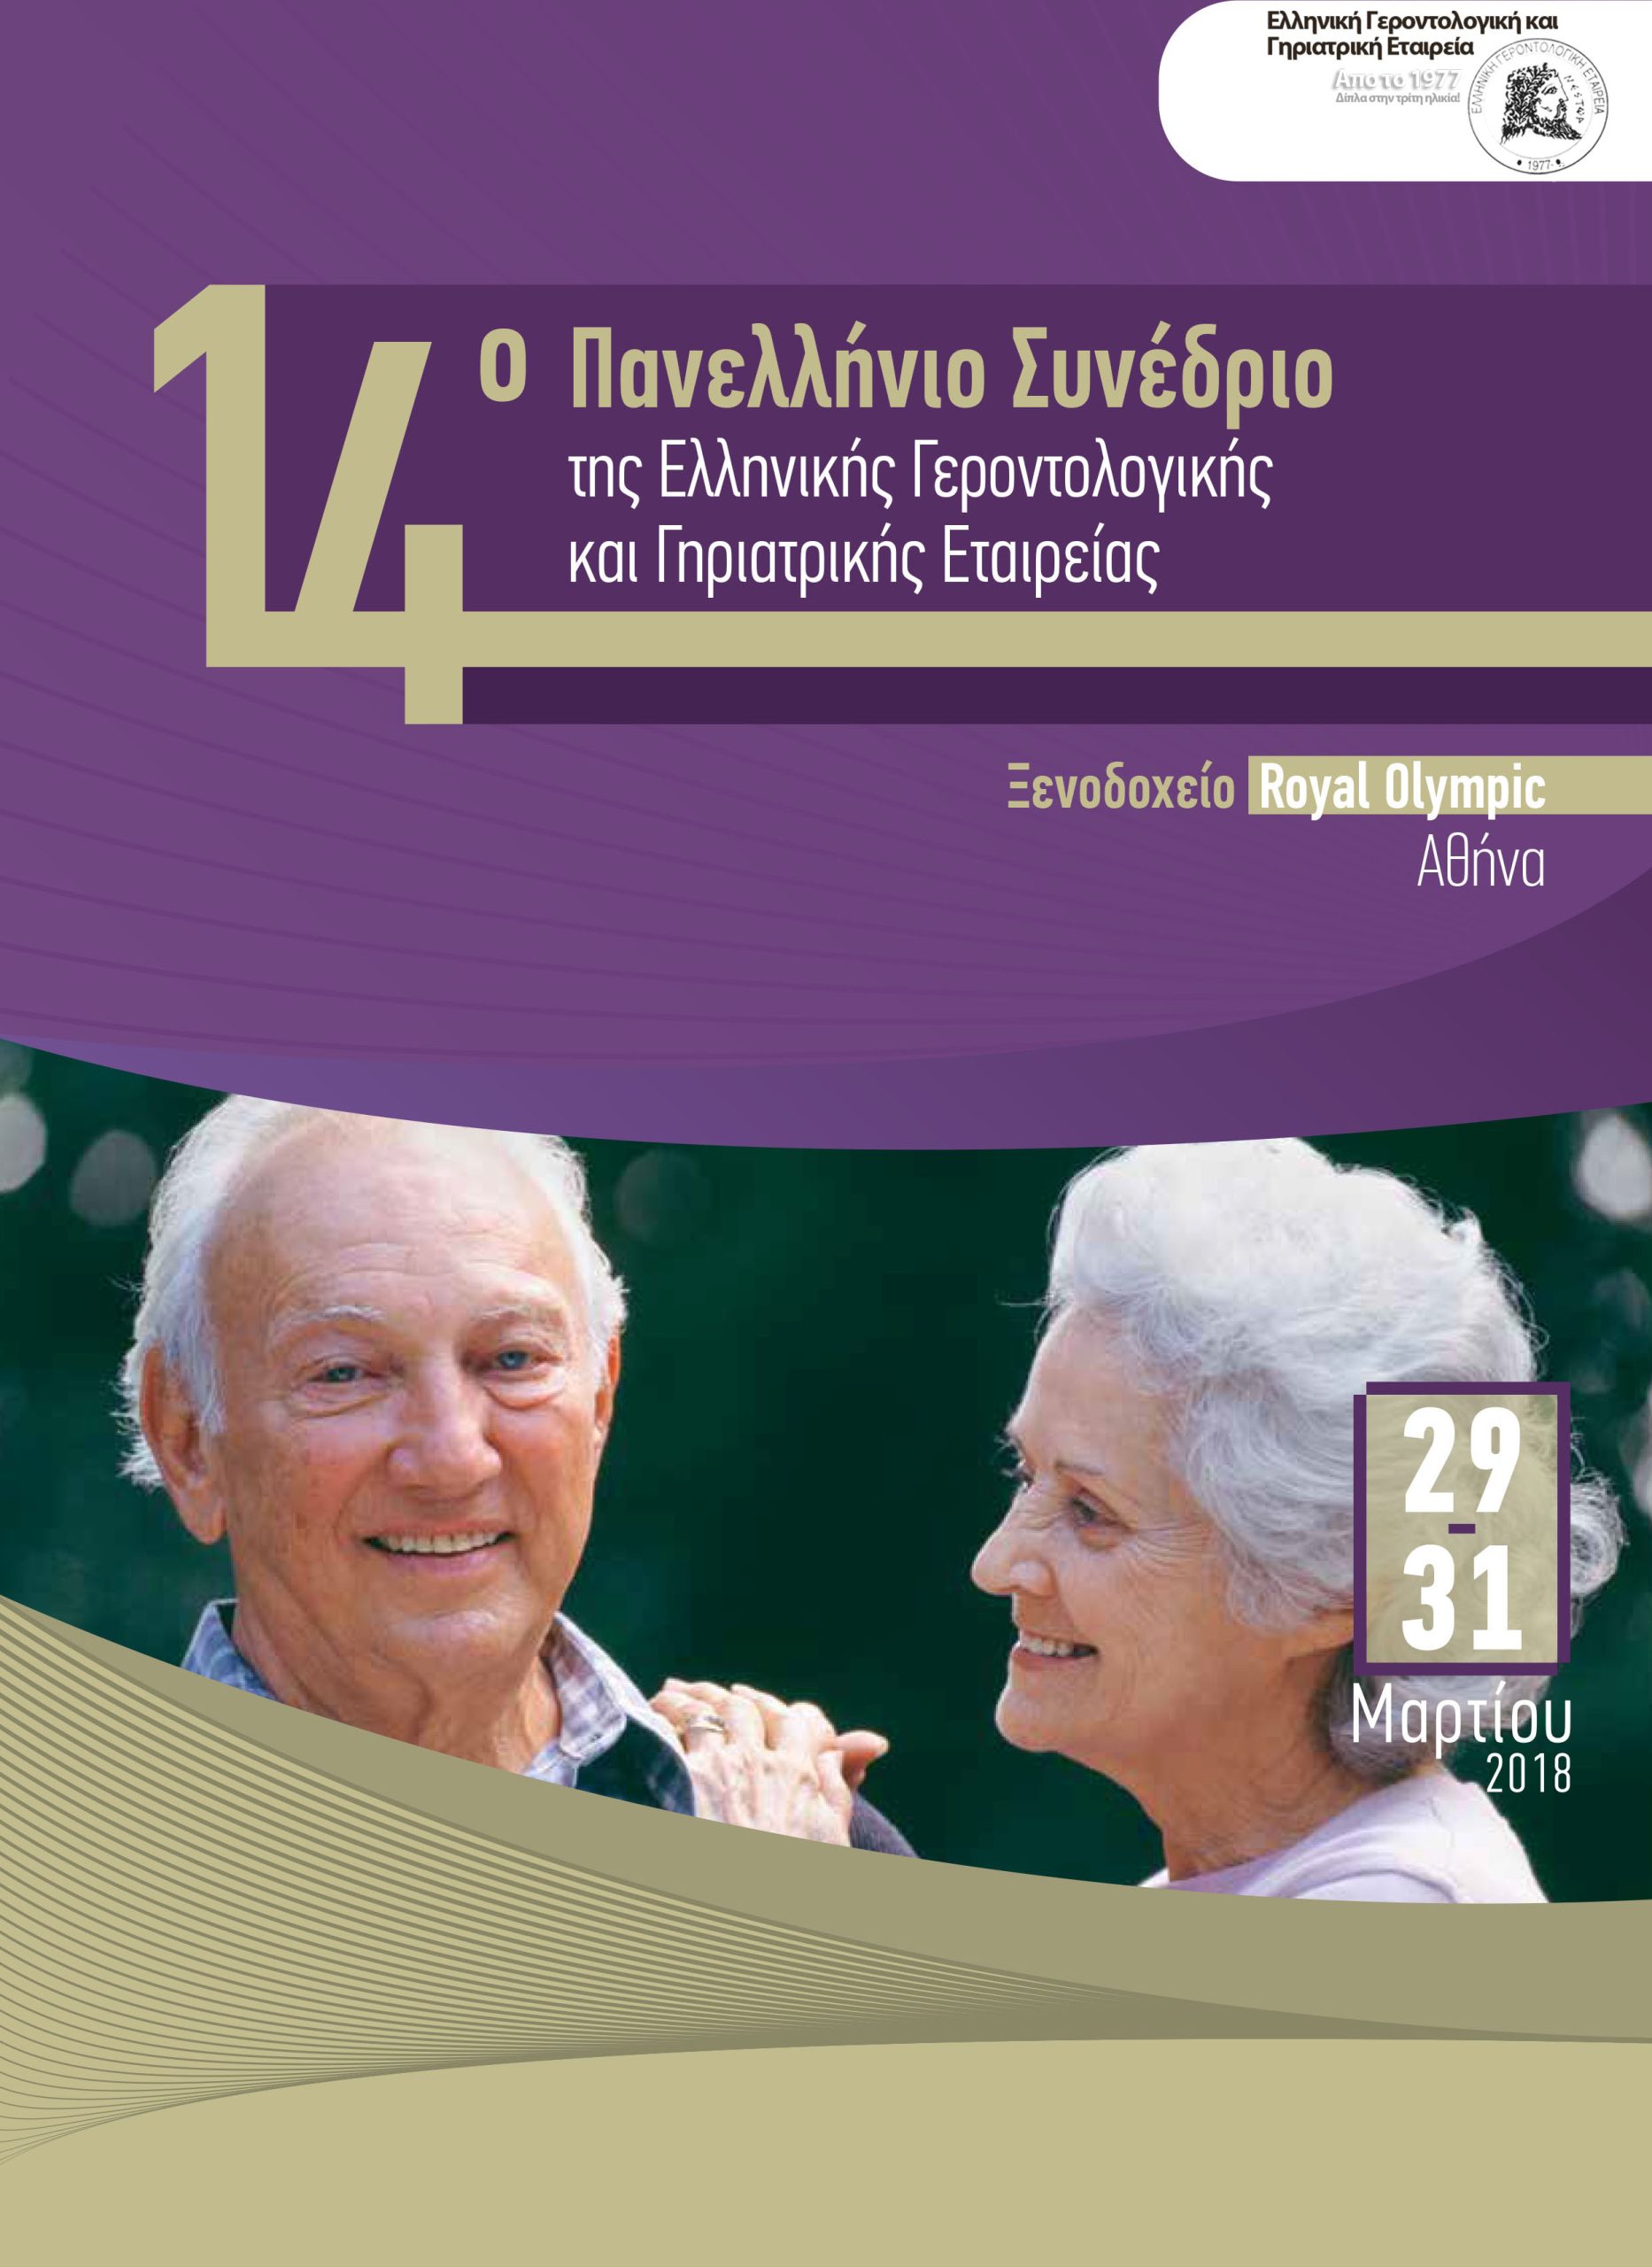 14ο Πανελλήνιο Συνέδριο της Ελληνικής Γεροντολογικής Εταιρείας.